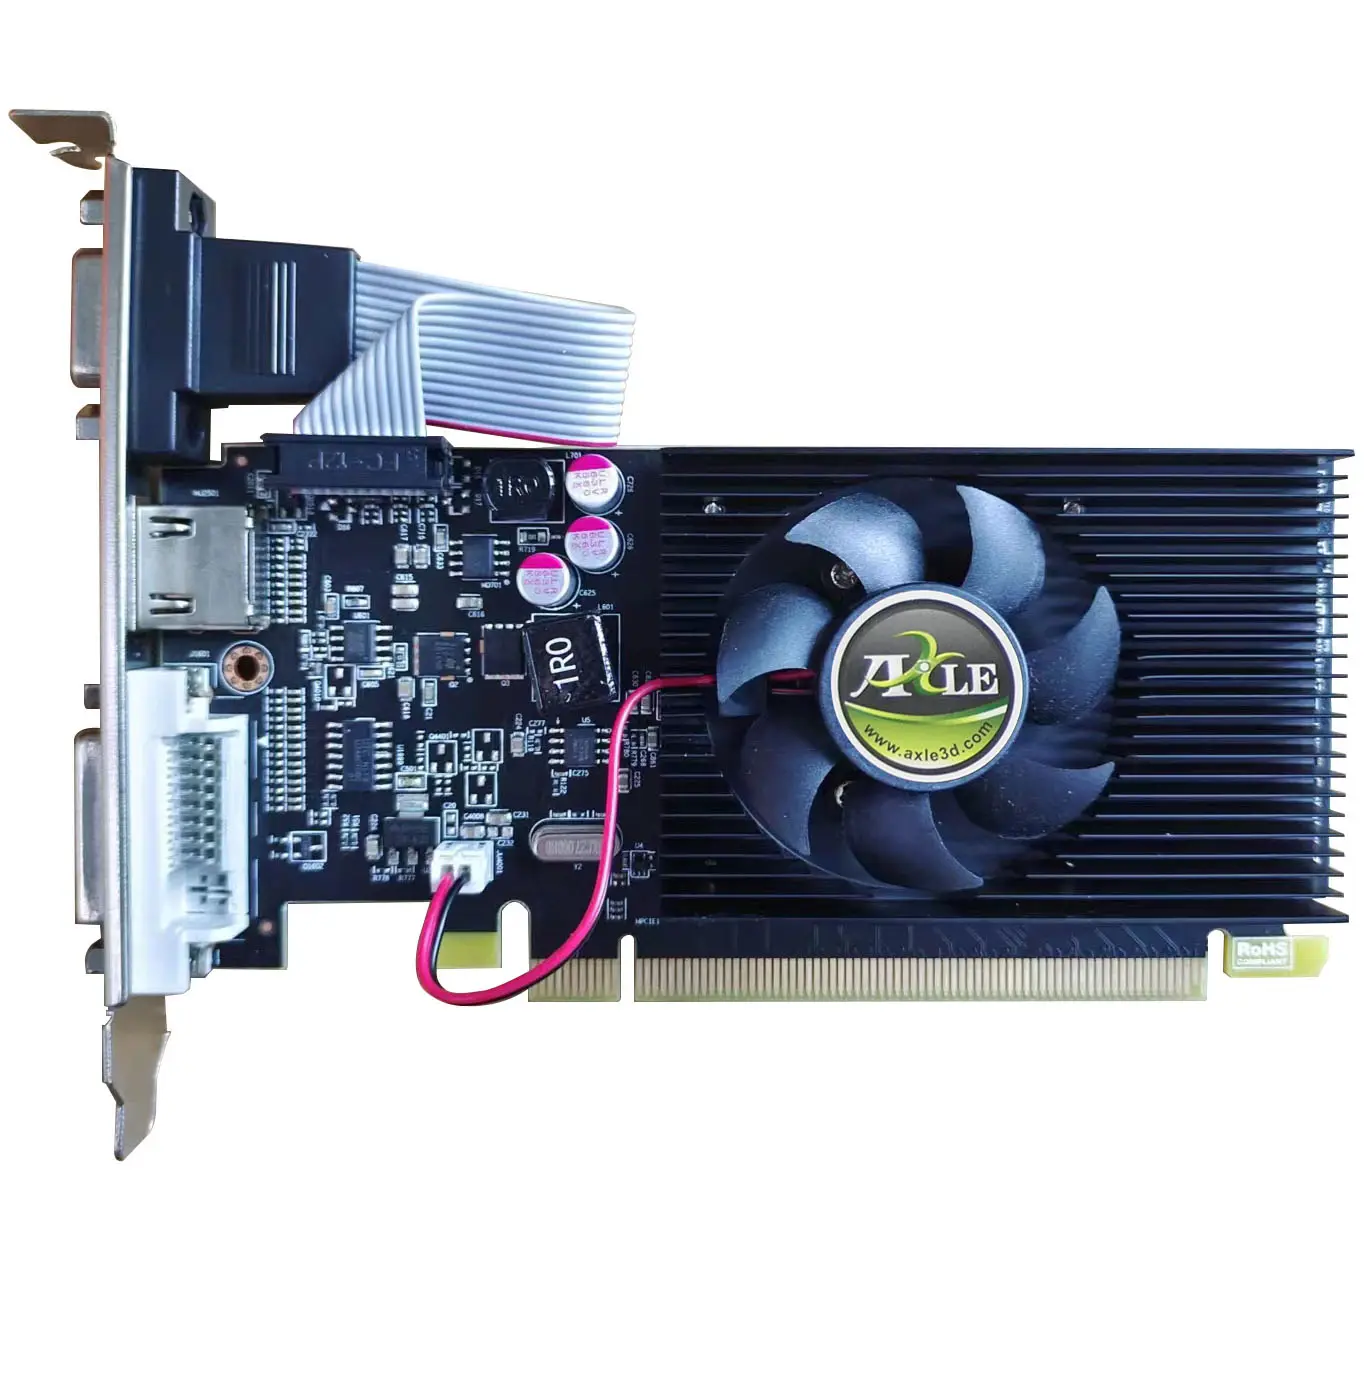 AXLE PC R5 230 DDR3 2G 1G 64Bits usine carte VGA GPU pièces d'ordinateur bureau vidéo jeu carte graphique